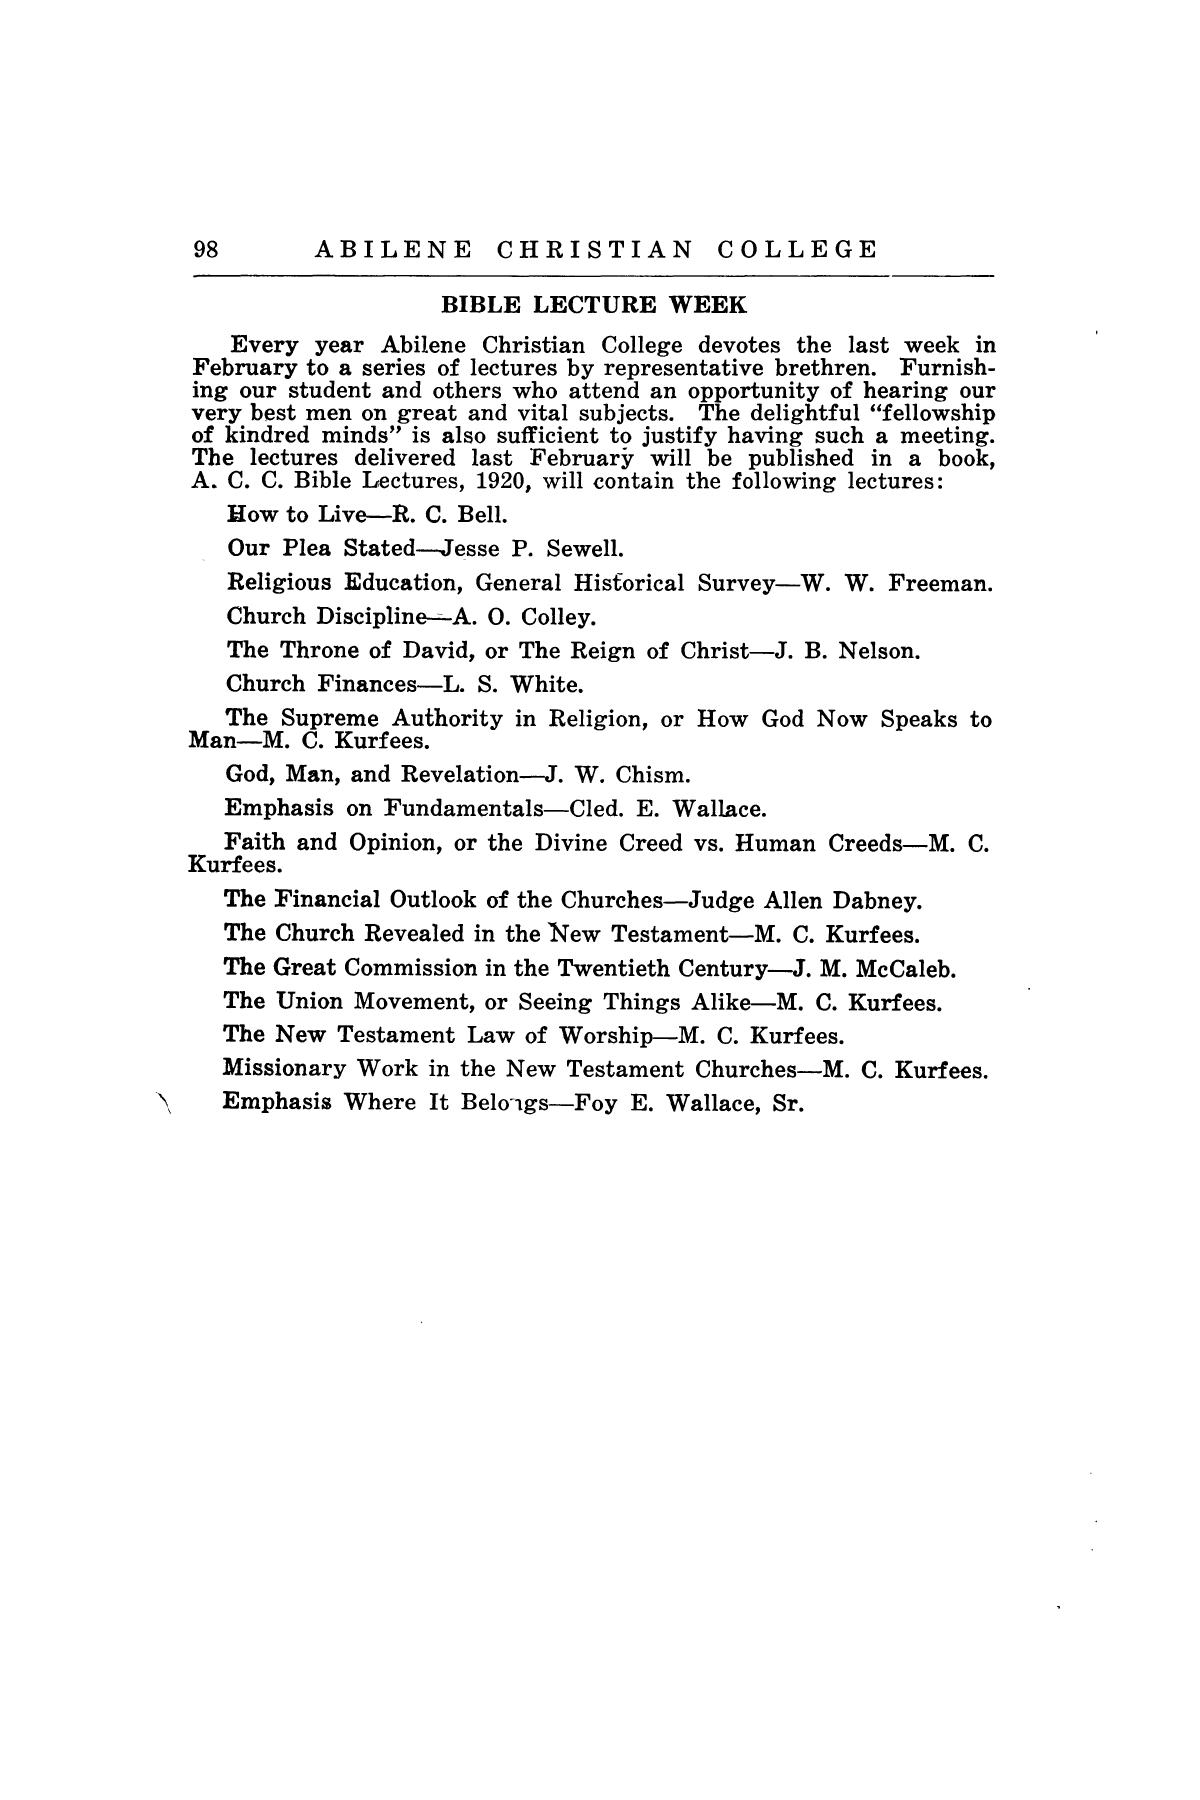 Catalog of Abilene Christian College, 1920-1921
                                                
                                                    98
                                                